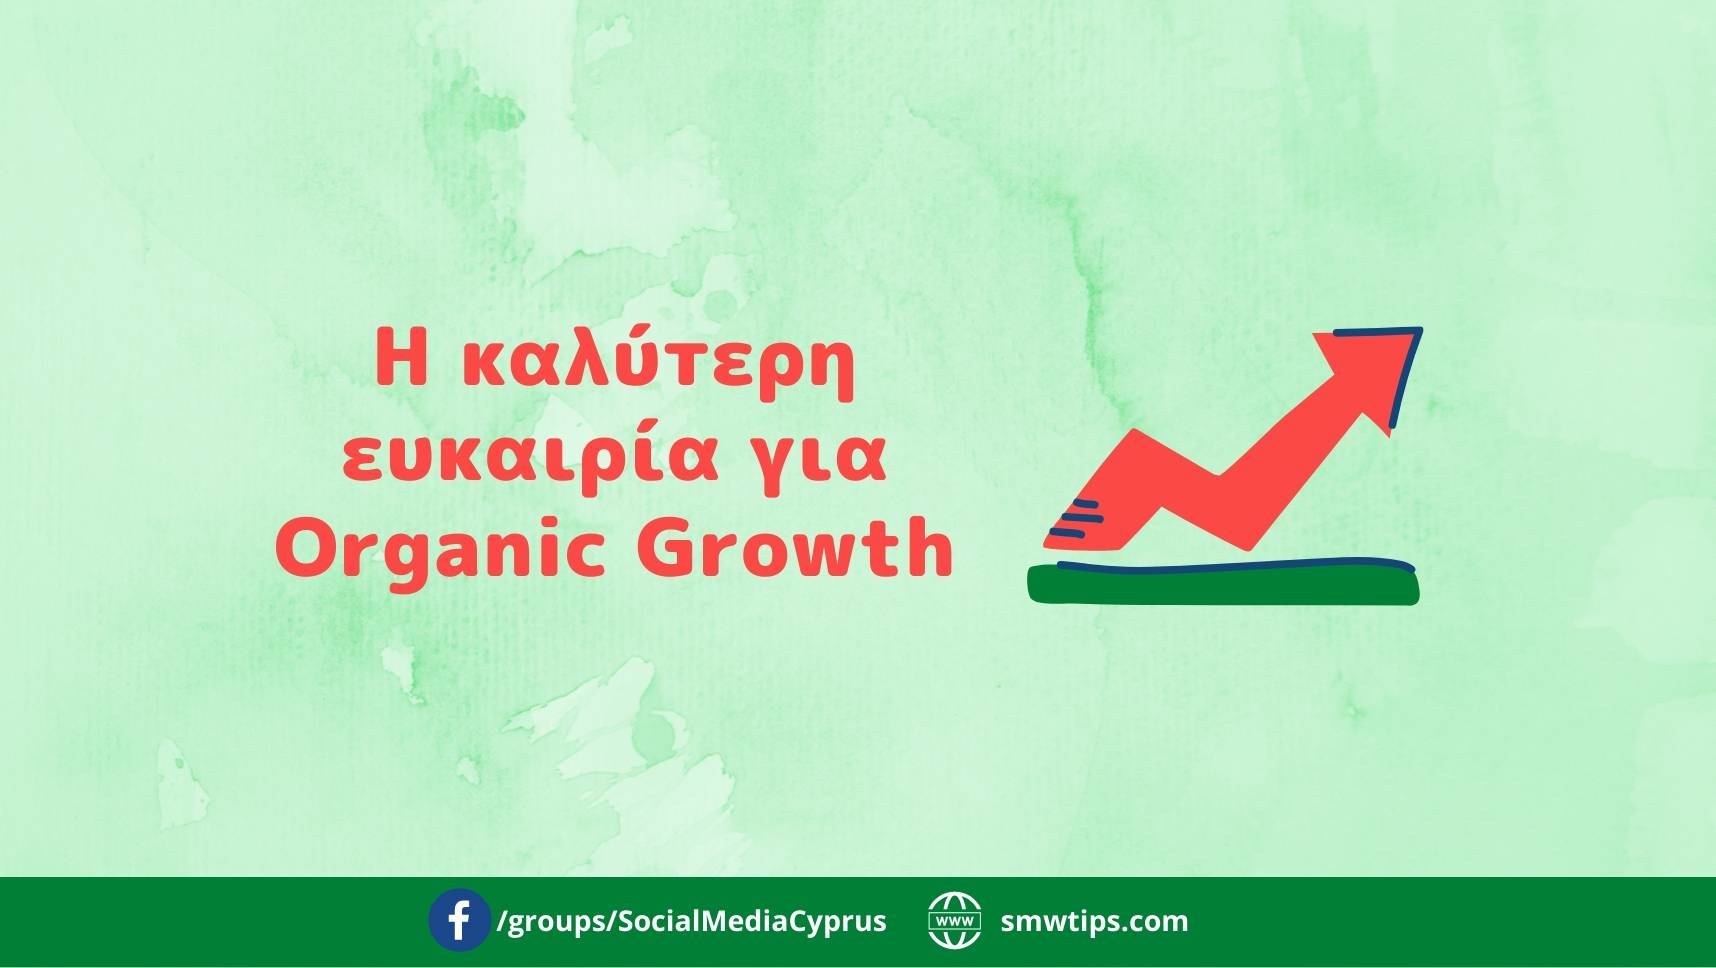 Η καλύτερη ευκαιρία για Organic Growth